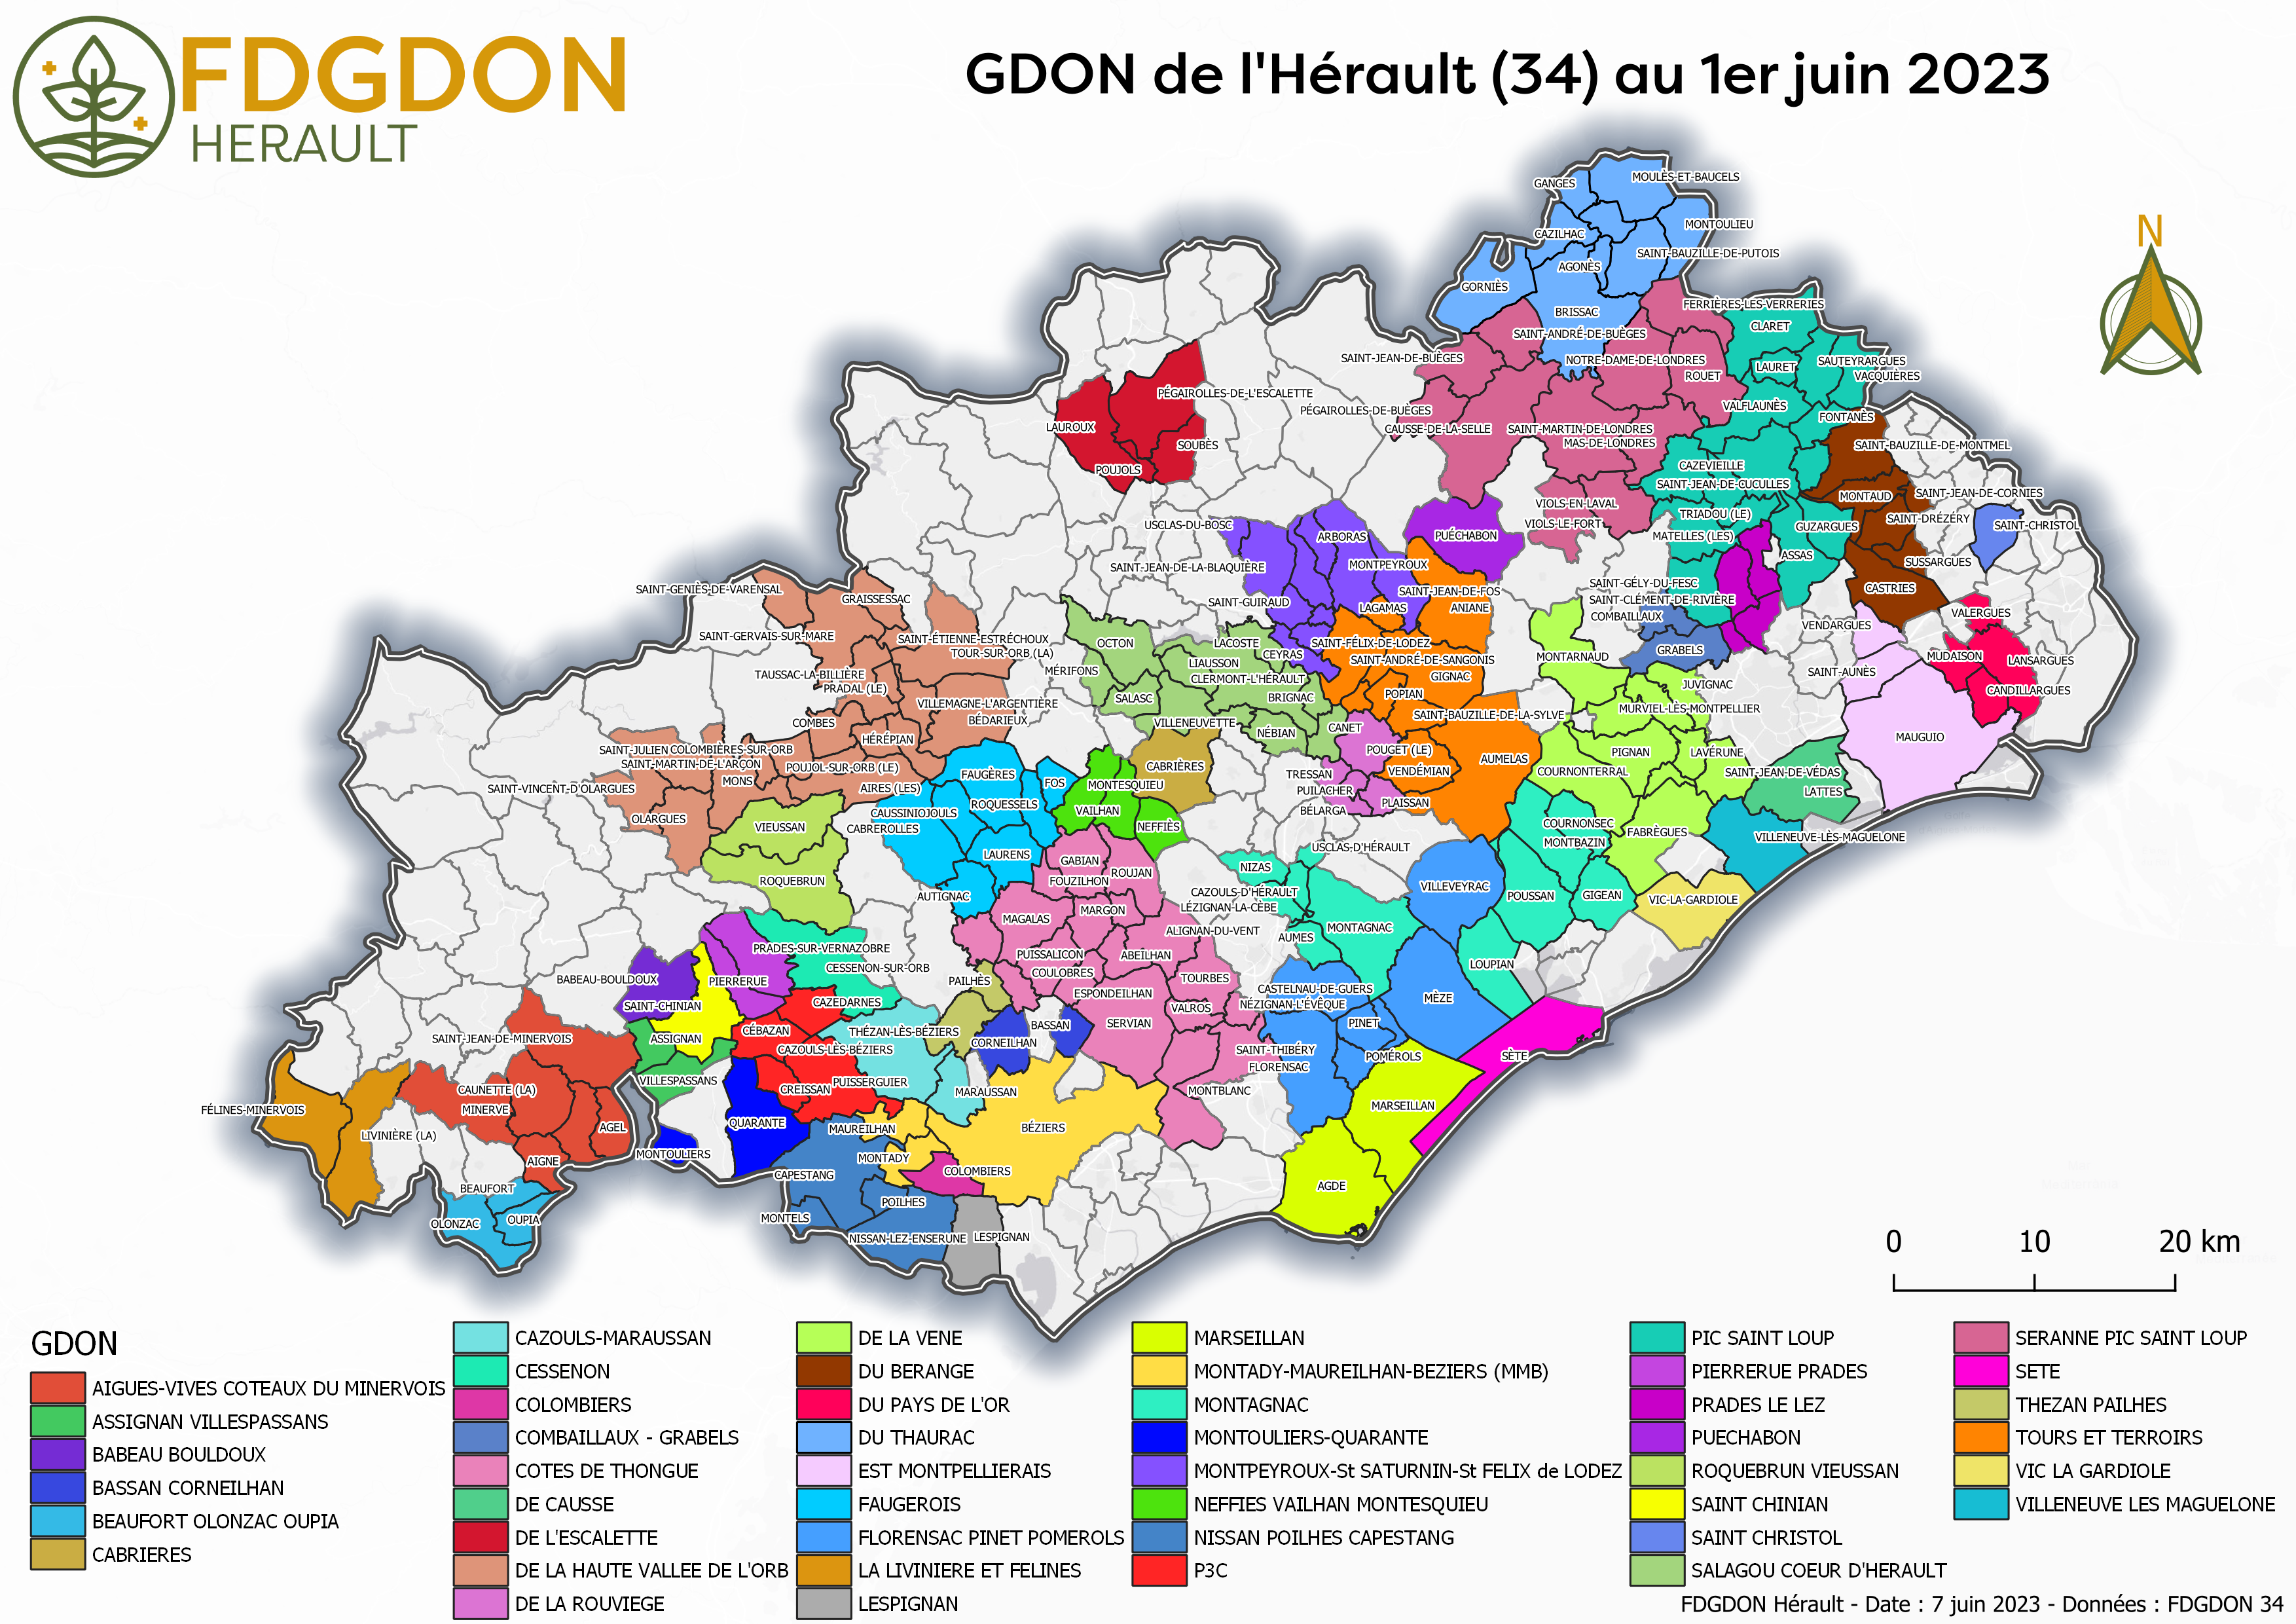 GDON de l'Hérault au 1er juin 2023